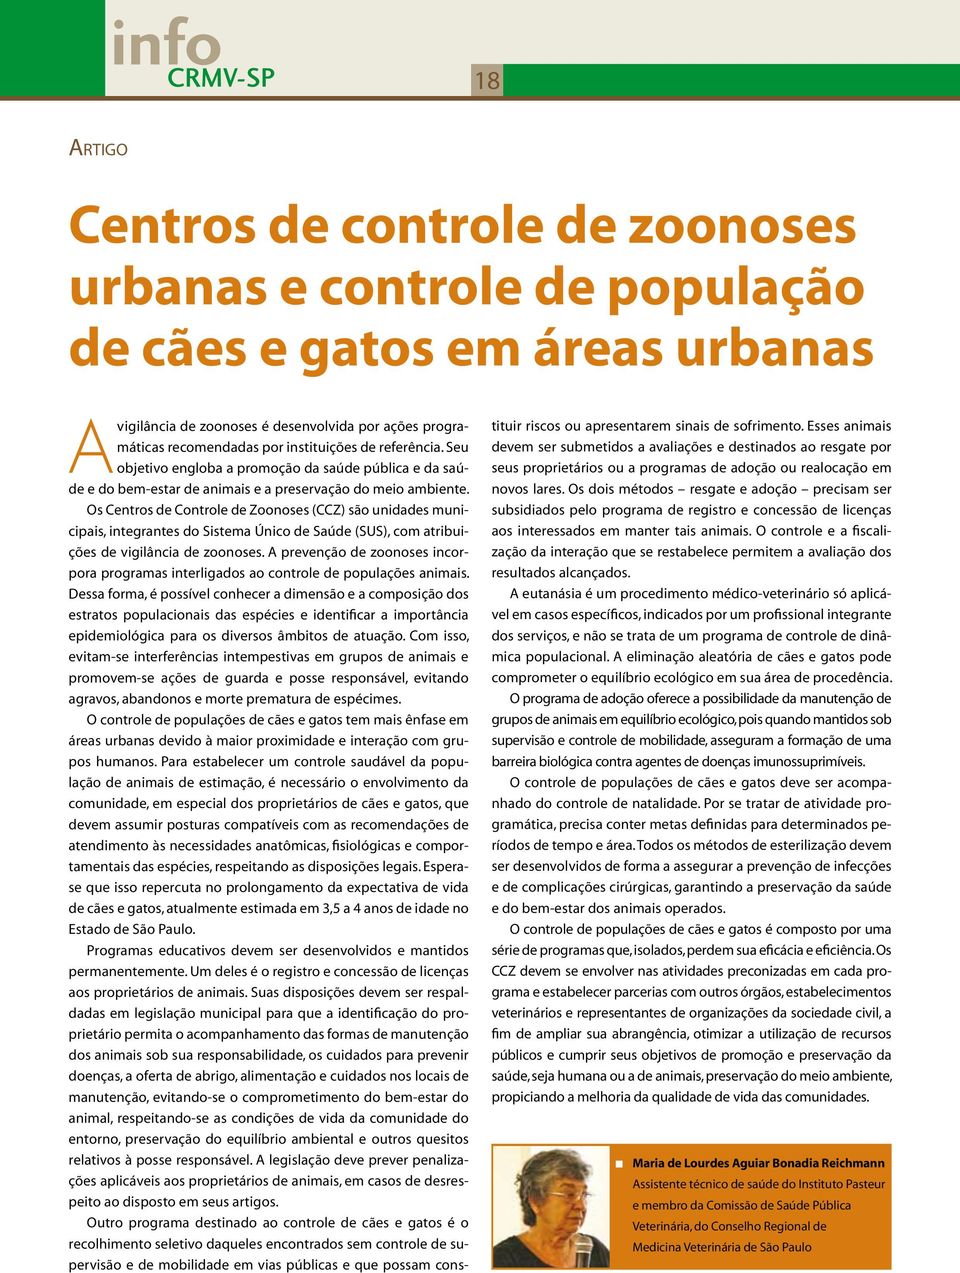 Os Centros de Controle de Zoonoses (CCZ) são unidades municipais, integrantes do Sistema Único de Saúde (SUS), com atribuições de vigilância de zoonoses.